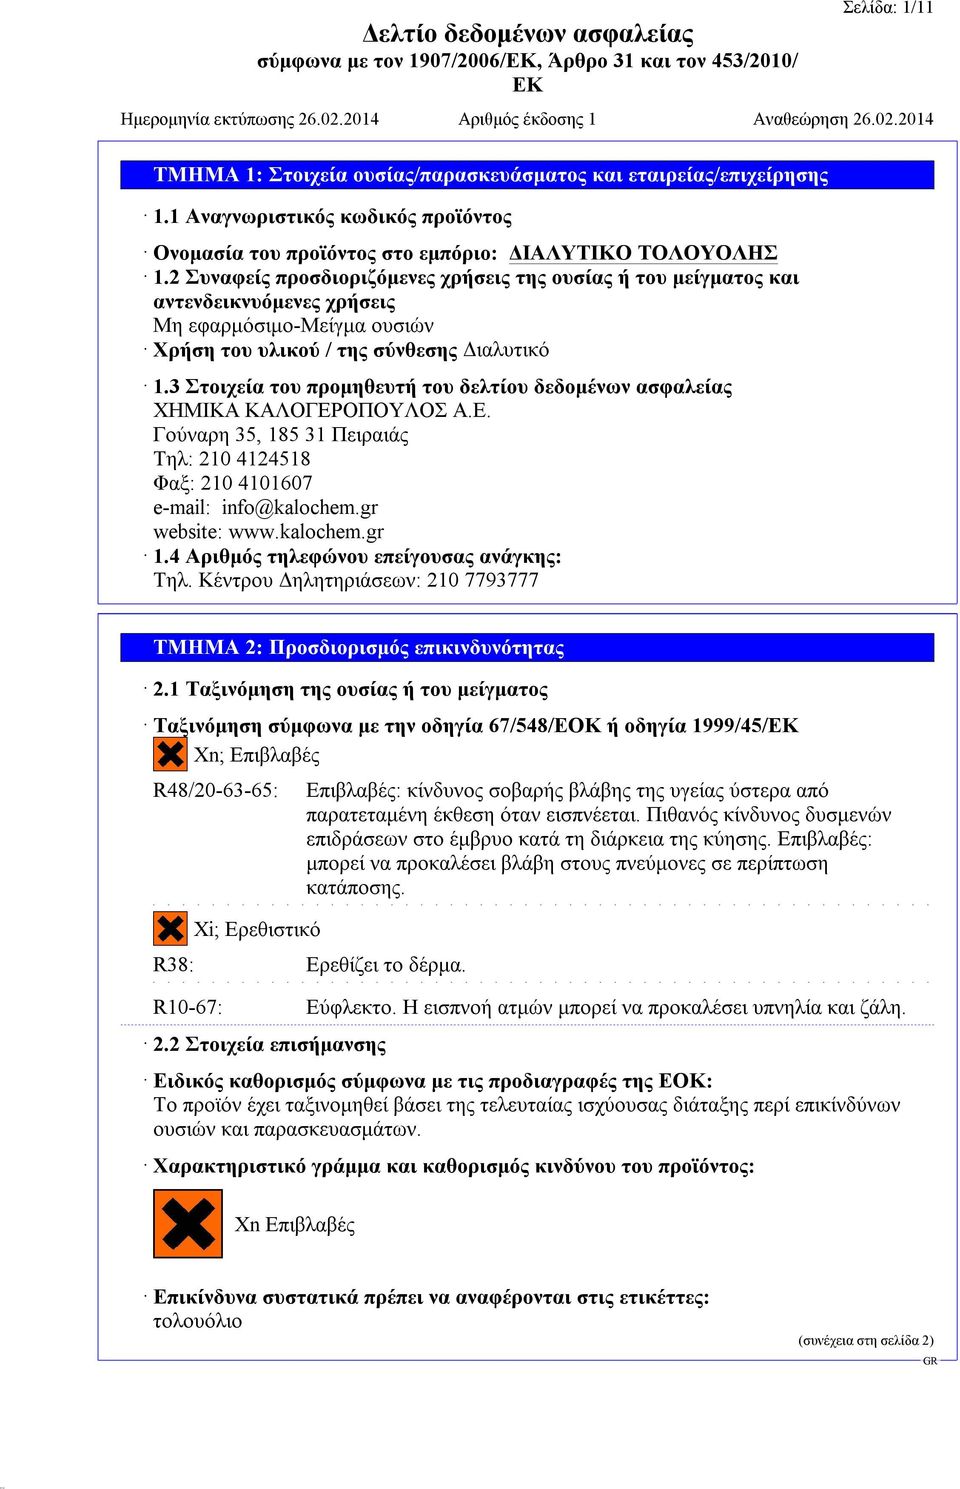 3 Στοιχεία του προμηθευτή του δελτίου δεδομένων ασφαλείας ΧΗΜΙΚΑ ΚΑΛΟΓΕΡΟΠΟΥΛΟΣ Α.Ε. Γούναρη 35, 185 31 Πειραιάς Τηλ: 210 4124518 Φαξ: 210 4101607 e-mail: info@kalochem.gr website: www.kalochem.gr 1.